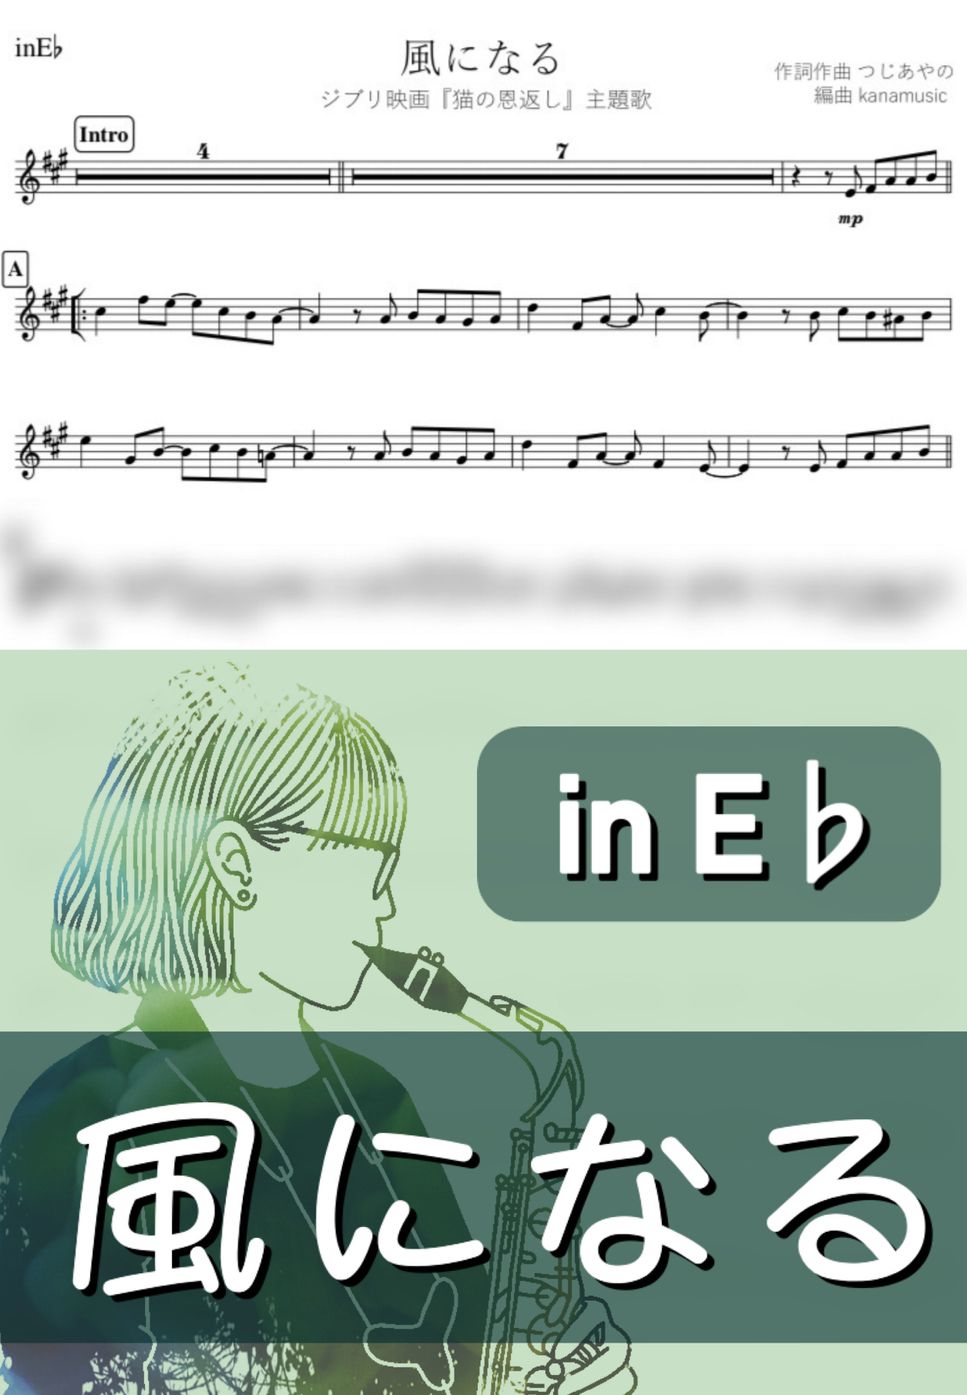 ジブリ 猫の恩返し - 風になる (E♭) by kanamusic